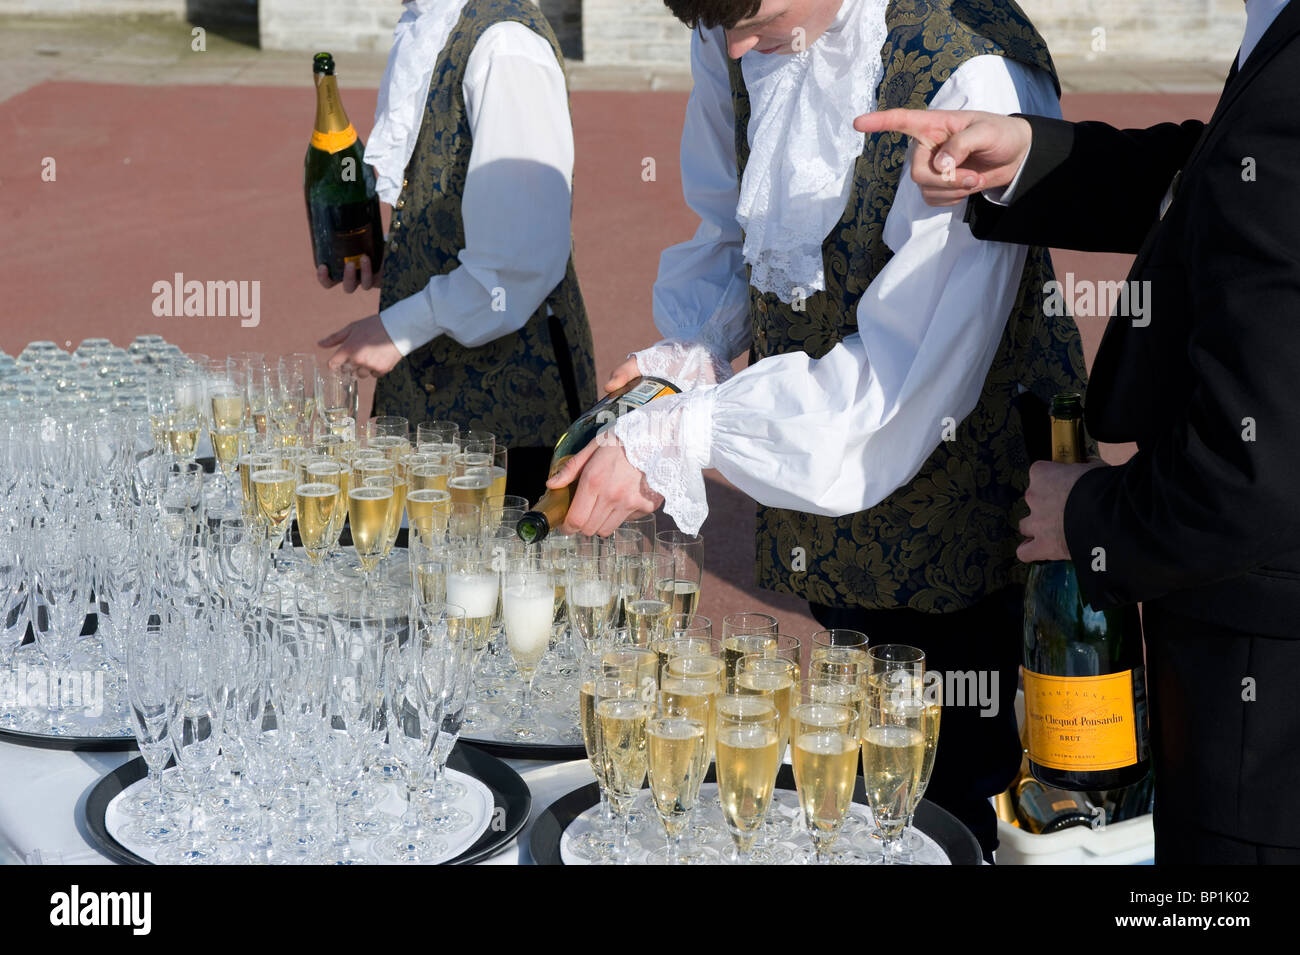 Au service de champagne dans le palais de Catherine, Saint Petersburg, Russie Banque D'Images